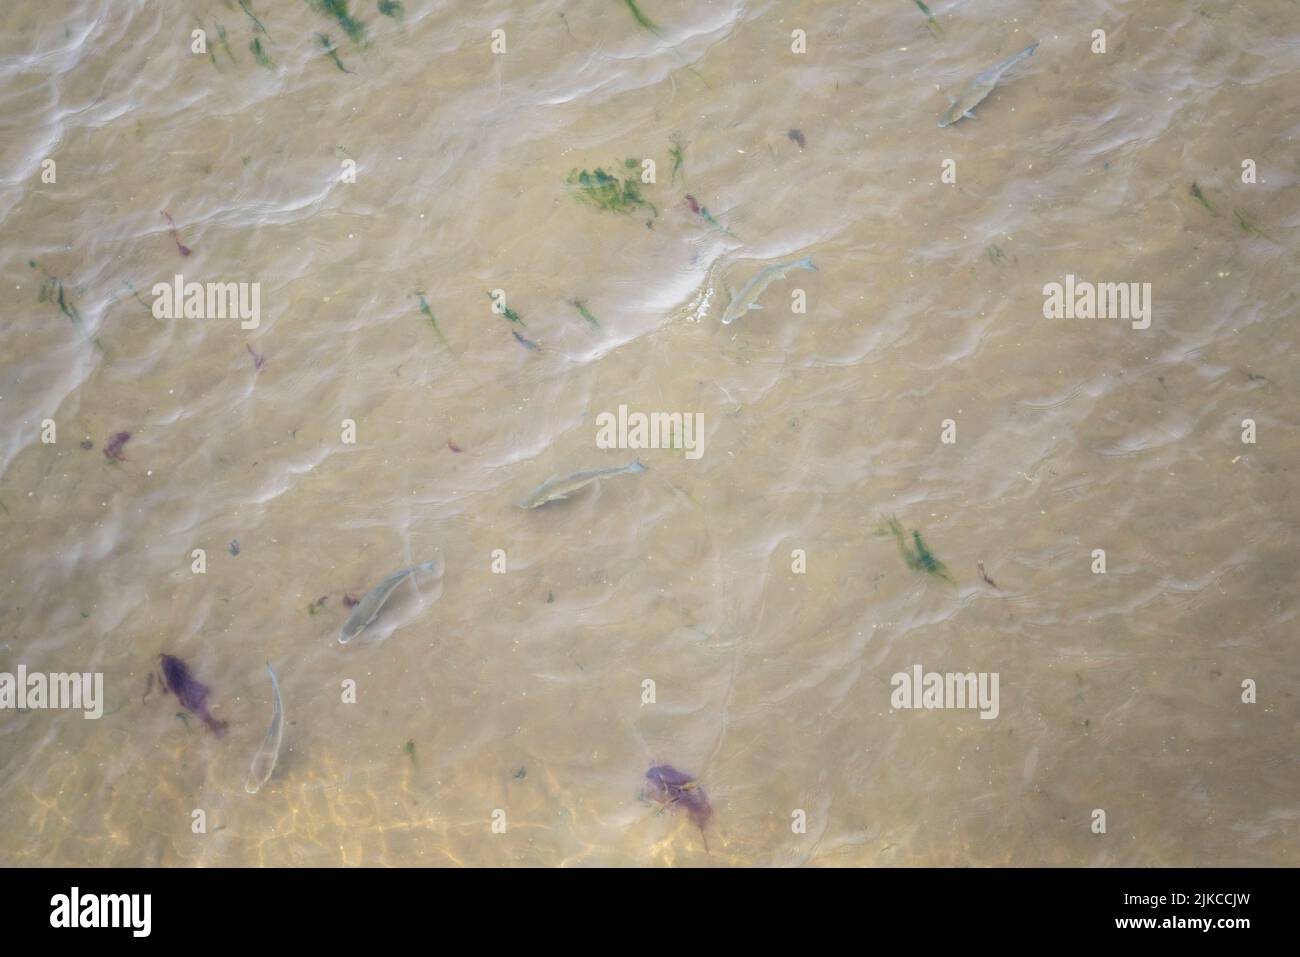 Große Fische schwimmen bei Ebbe im flachen Wasser vor Southend on Sea, Essex, Großbritannien. Schlammvorland mit Algen. Blick von oben Stockfoto